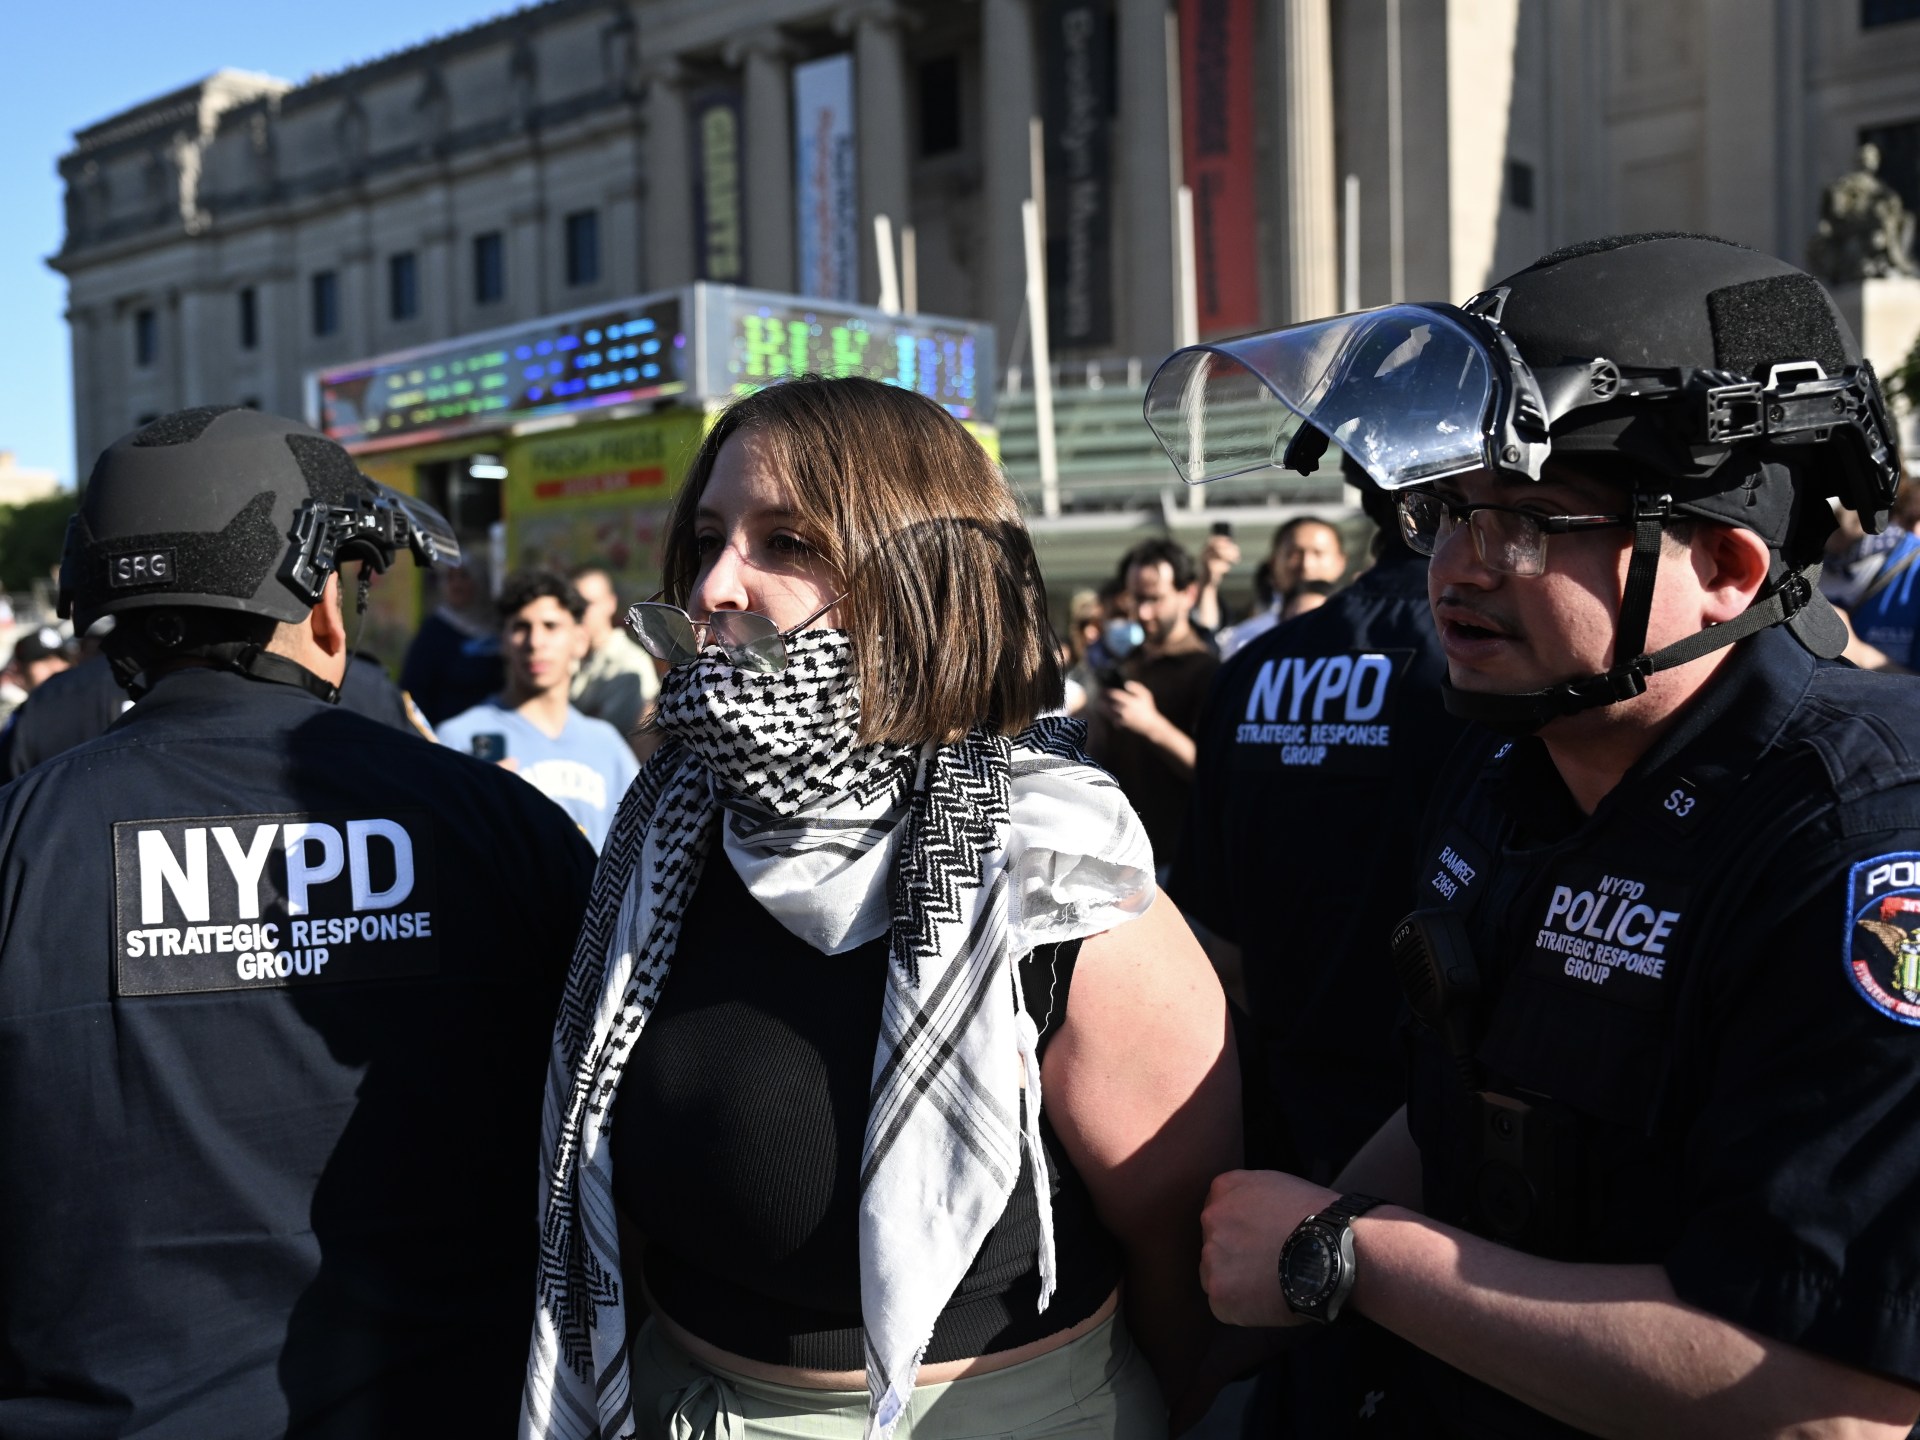 شرطة نيويورك تعتقل نشطاء خلال مظاهرة رافضة للعدوان على غزة | أخبار – البوكس نيوز